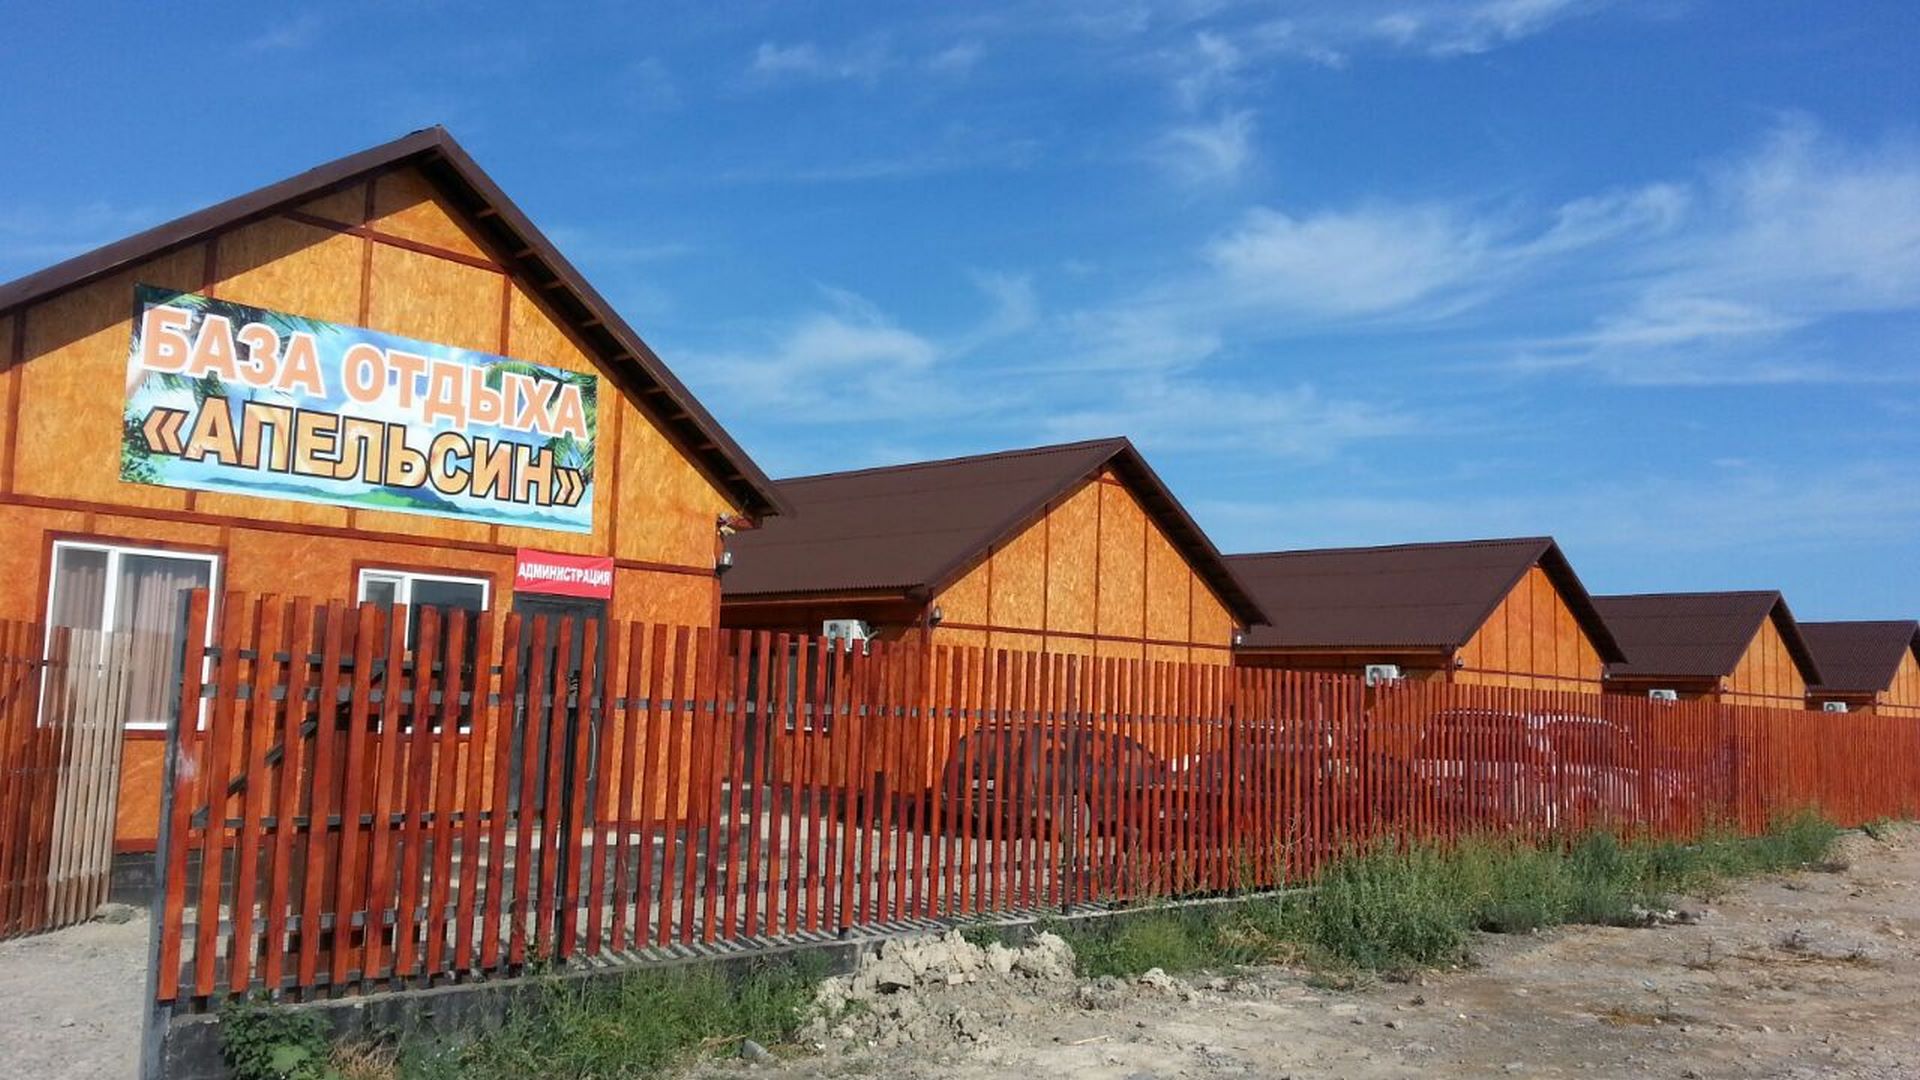 Апельсин - Limpopo Travel в Казахстане